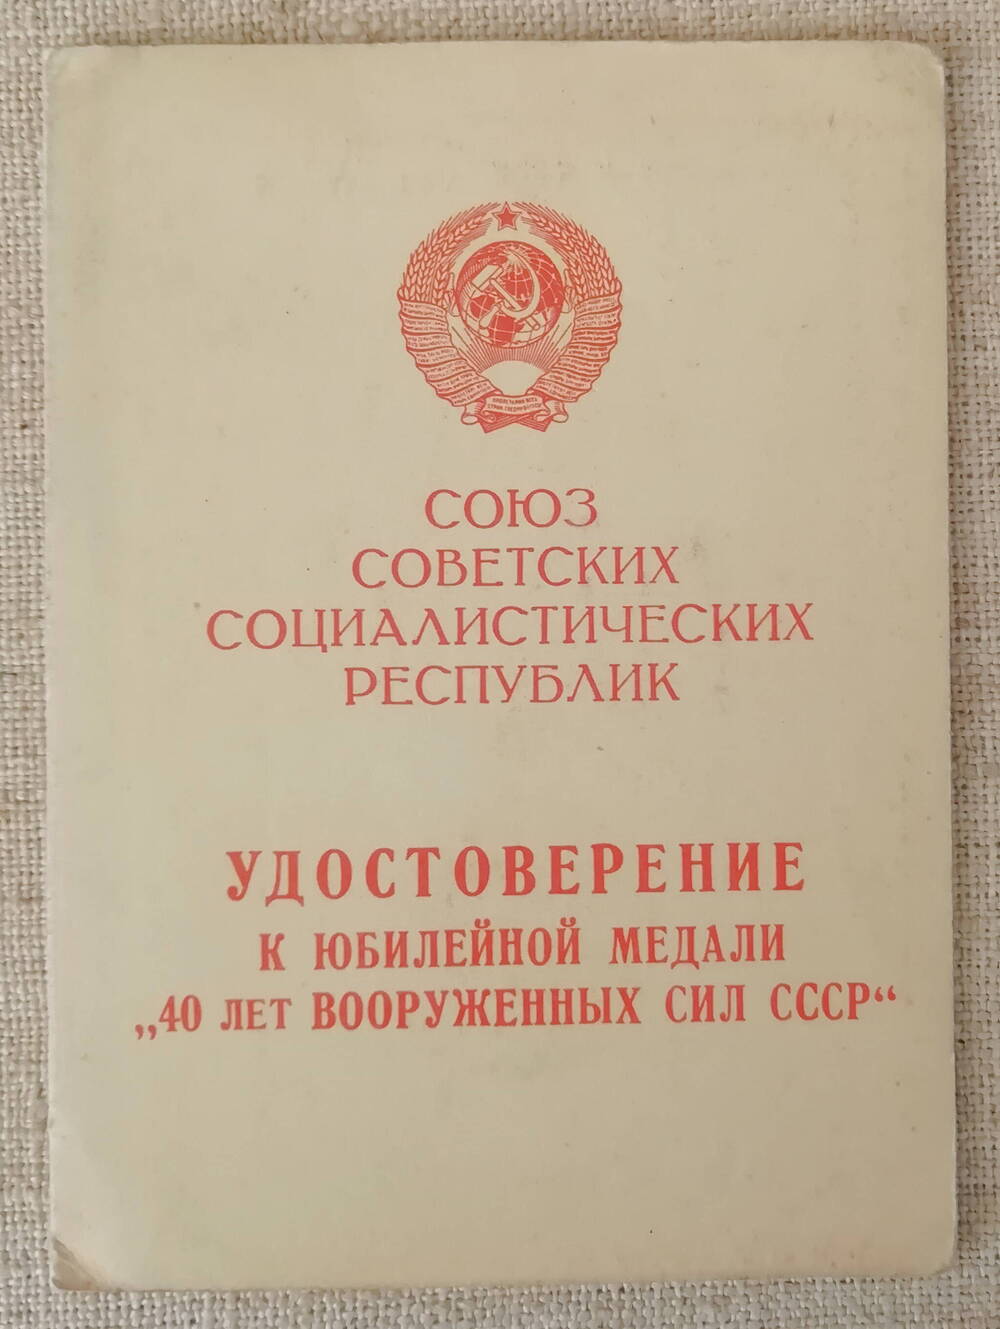 Удостоверение к юбилейной  медали  40 лет Вооруженных сил СССР Кибаль И.А.